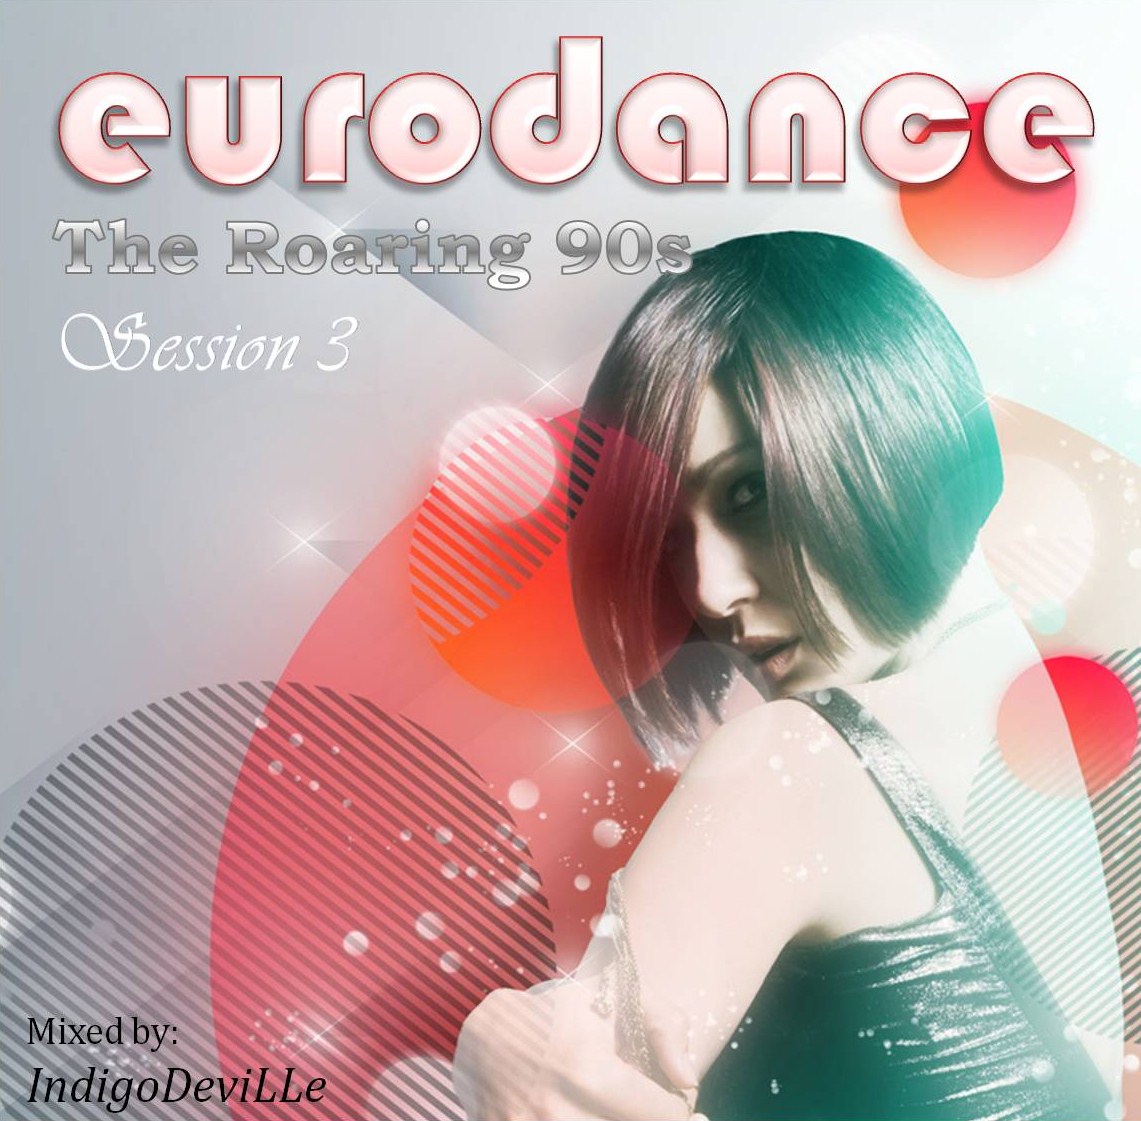 http://3.bp.blogspot.com/_jGUU3qB-E1E/TUzY4_iyOuI/AAAAAAAAAgc/R3w_215FmDQ/s1600/Roaring+90s+3+-+Eurodance.jpg